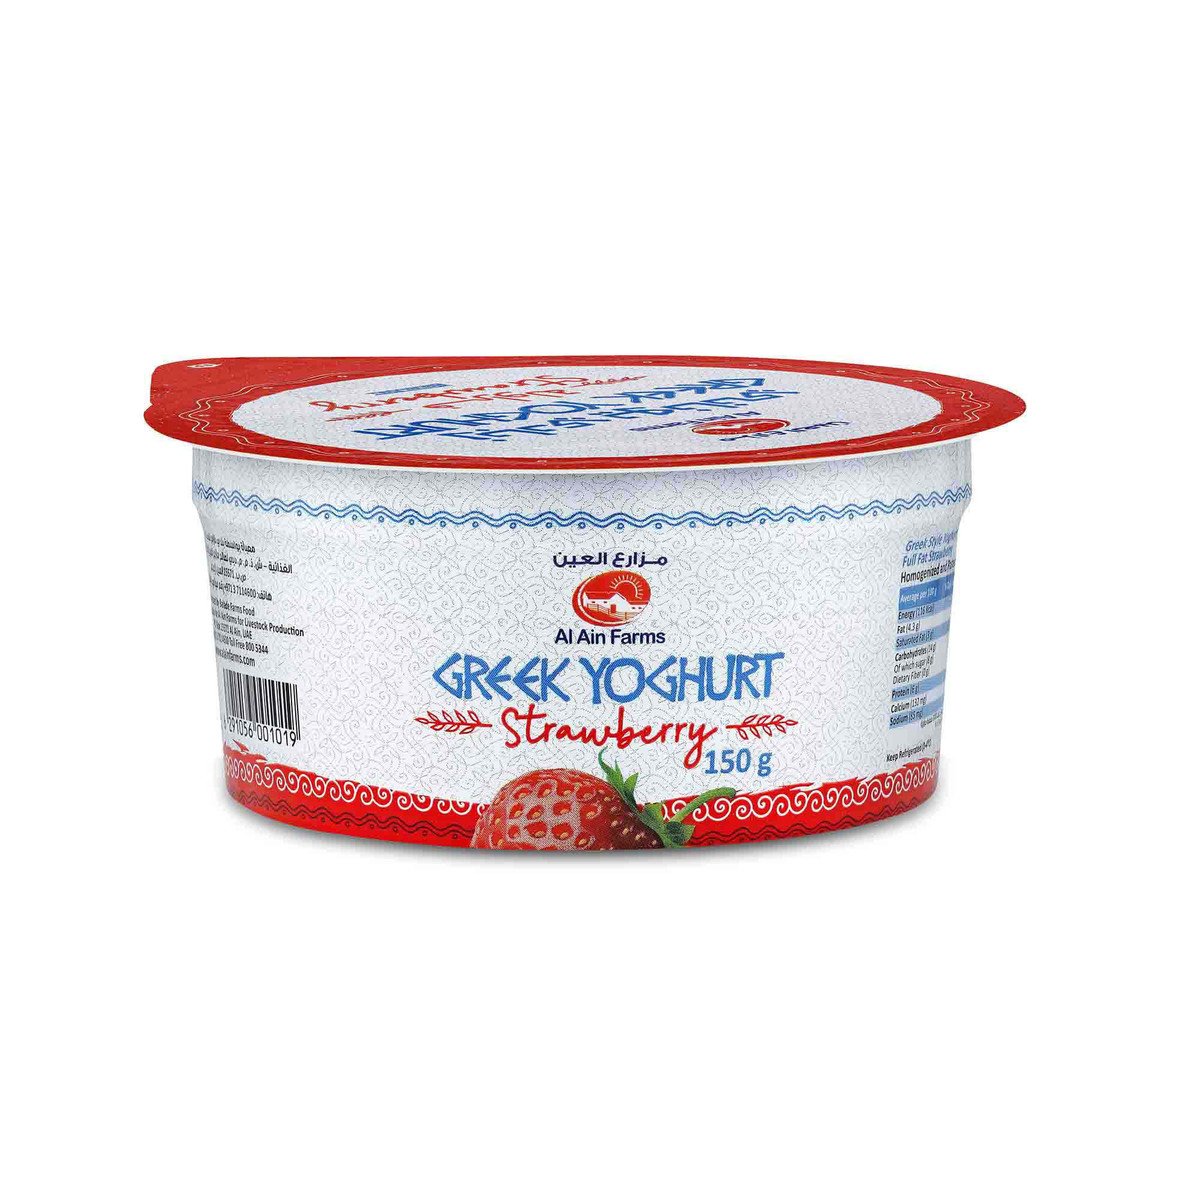 Al Ain Strawberry Yoghurt Greek, 150 g